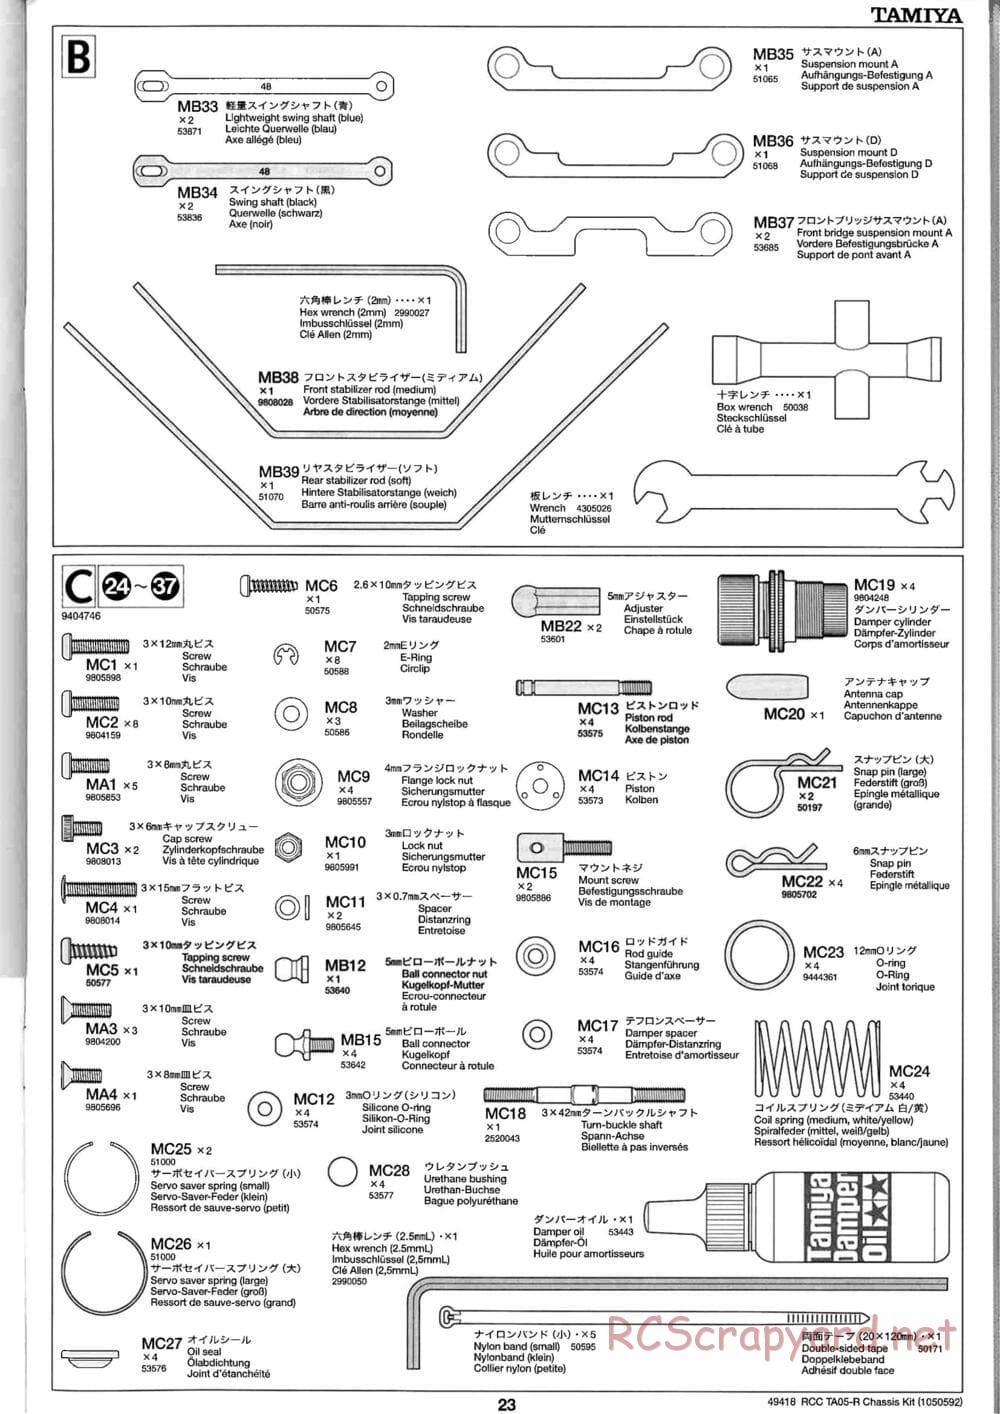 Tamiya - TA05-R Chassis - Manual - Page 23